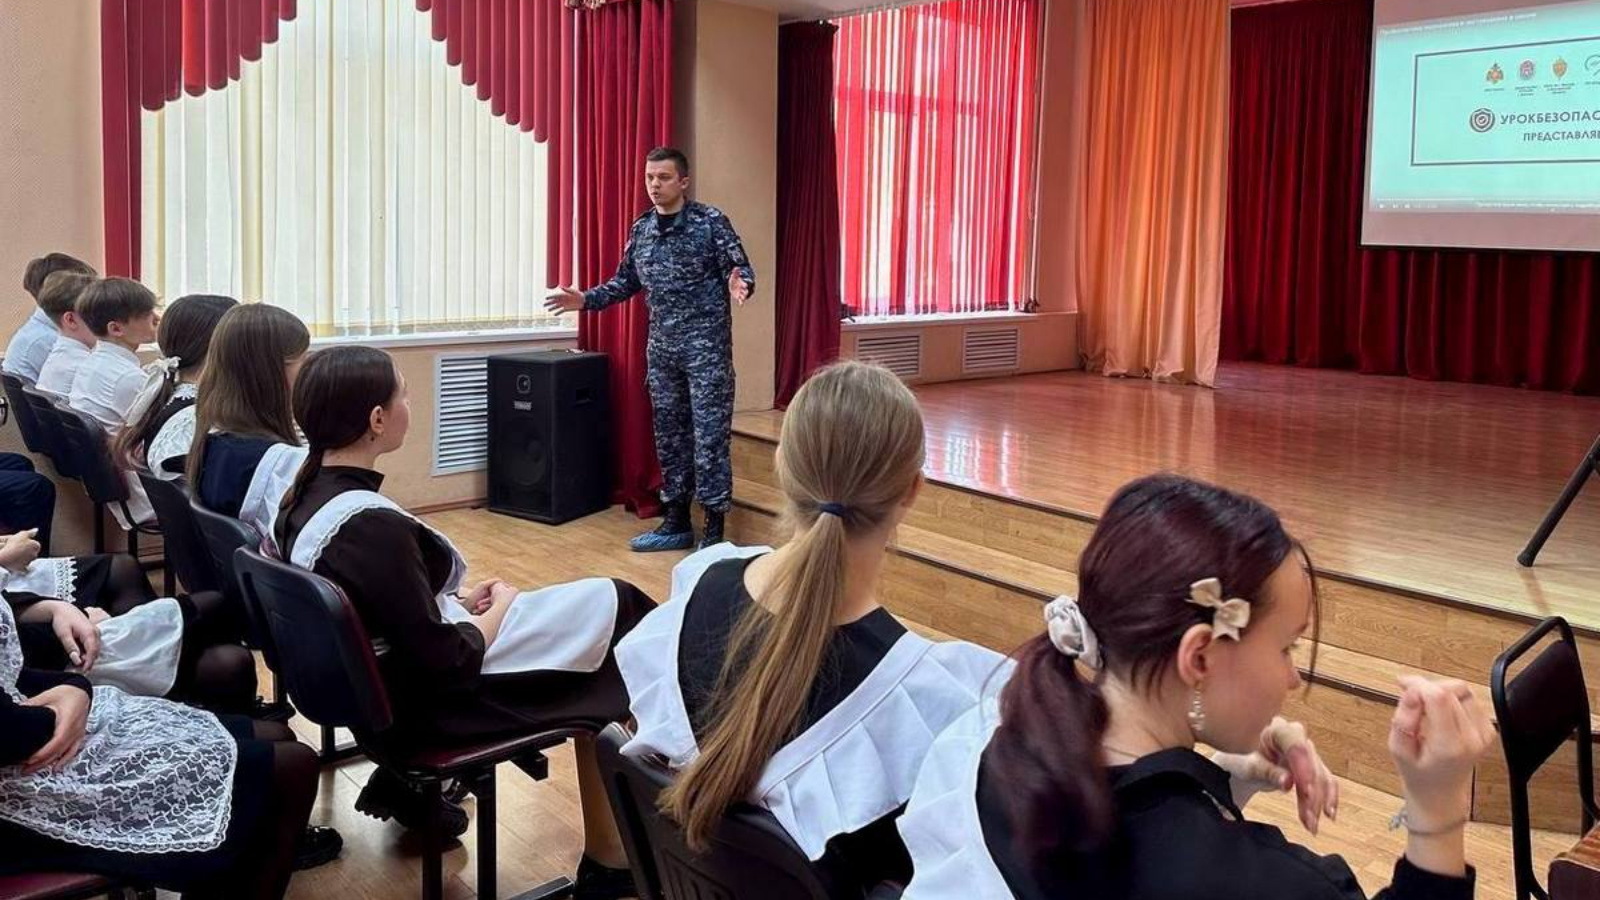 Офицер казанского полка Росгвардии рассказал школьникам о правилах поведения в чрезвычайных ситуациях